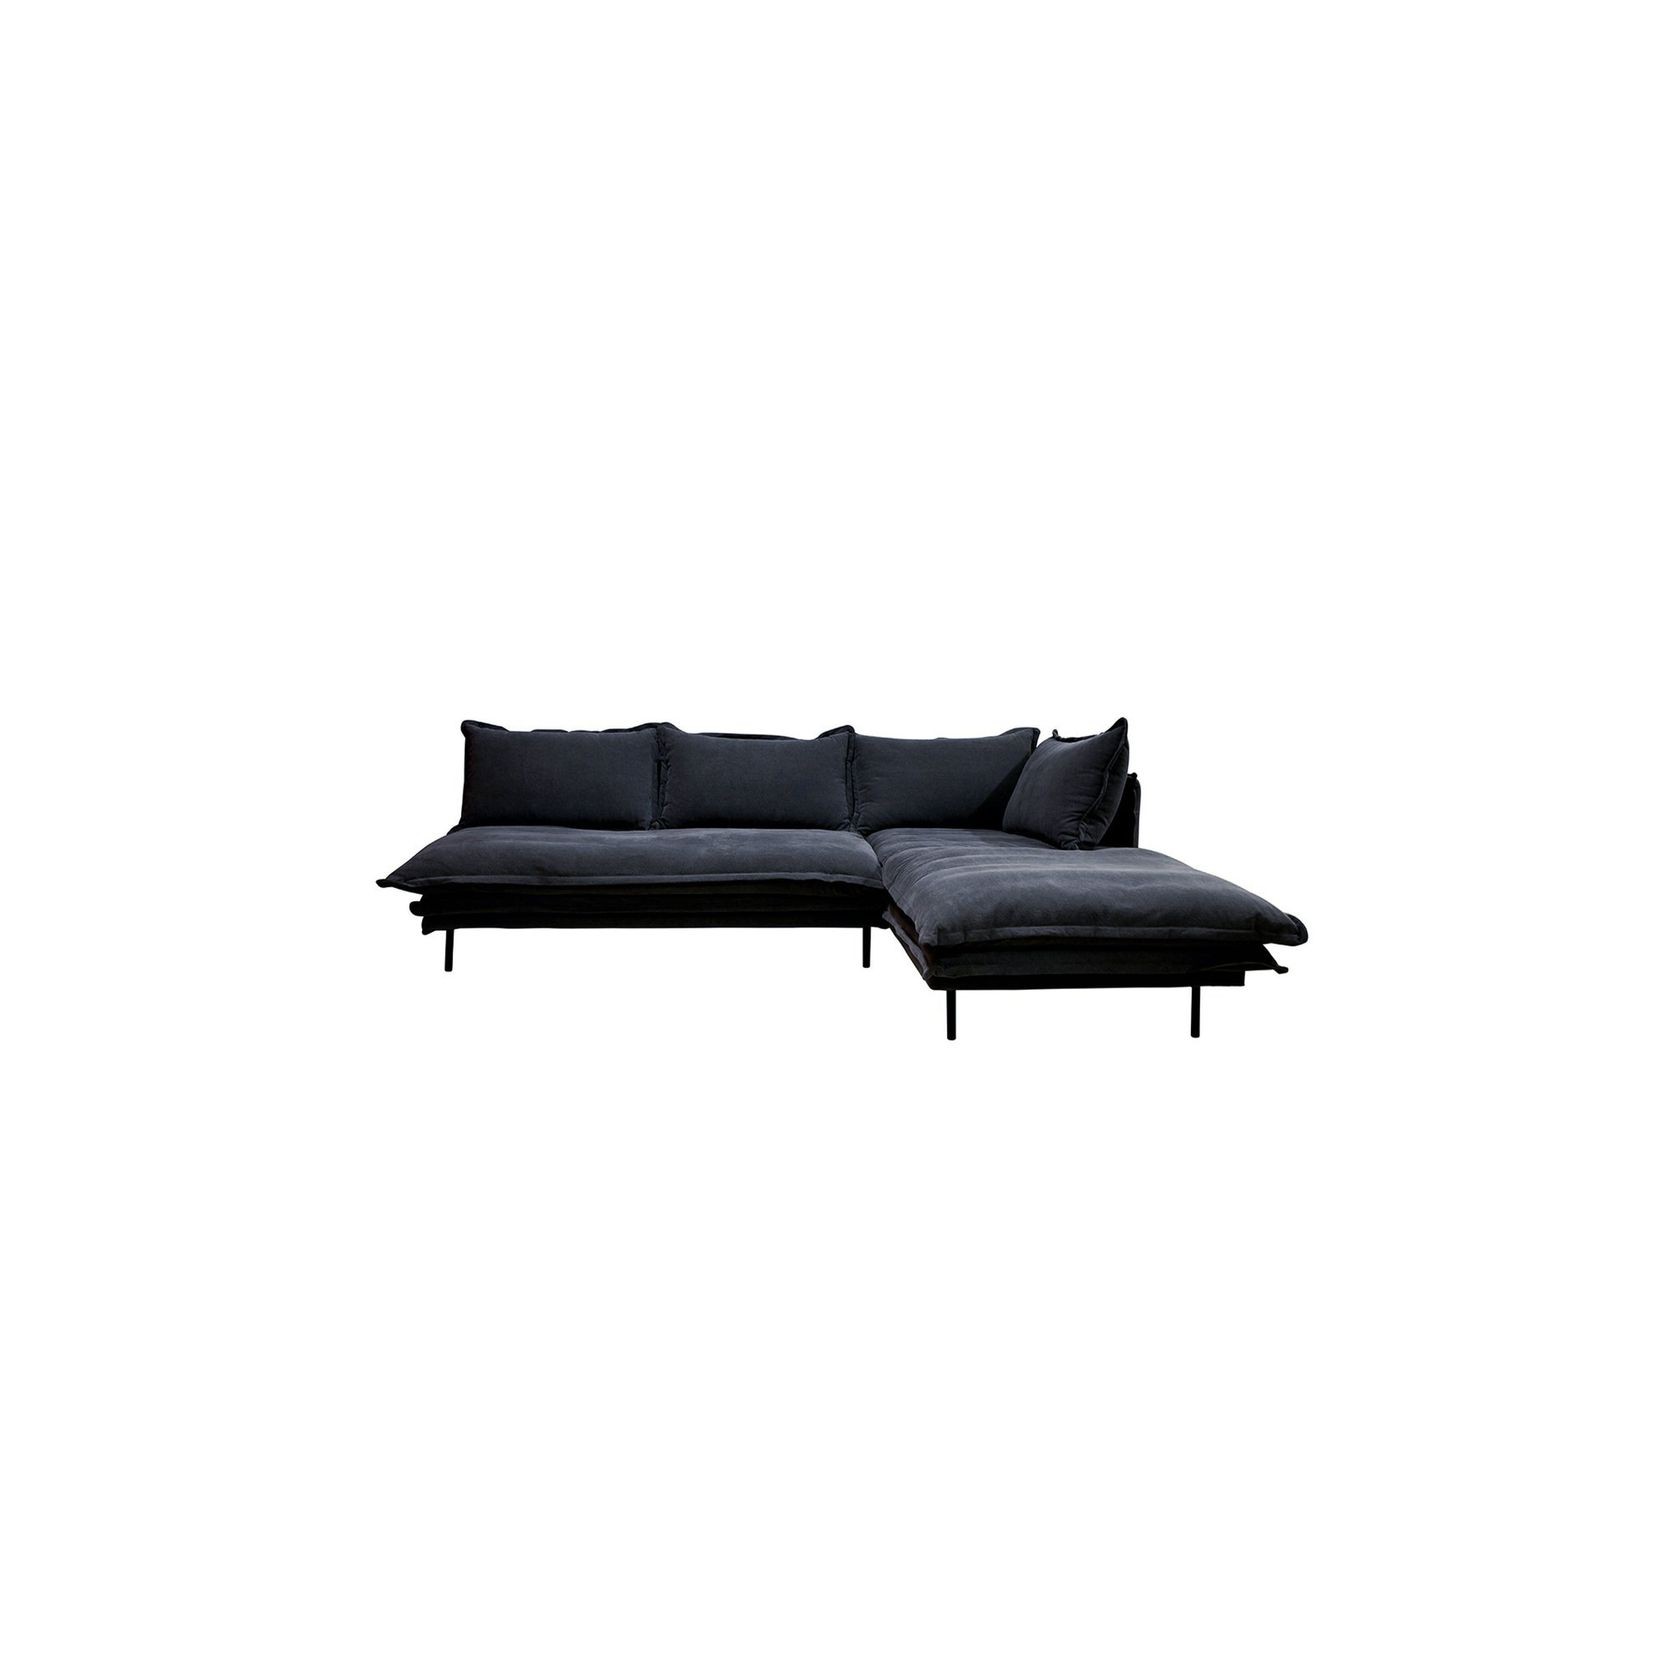 LOUIS Modular Sofa gallery detail image